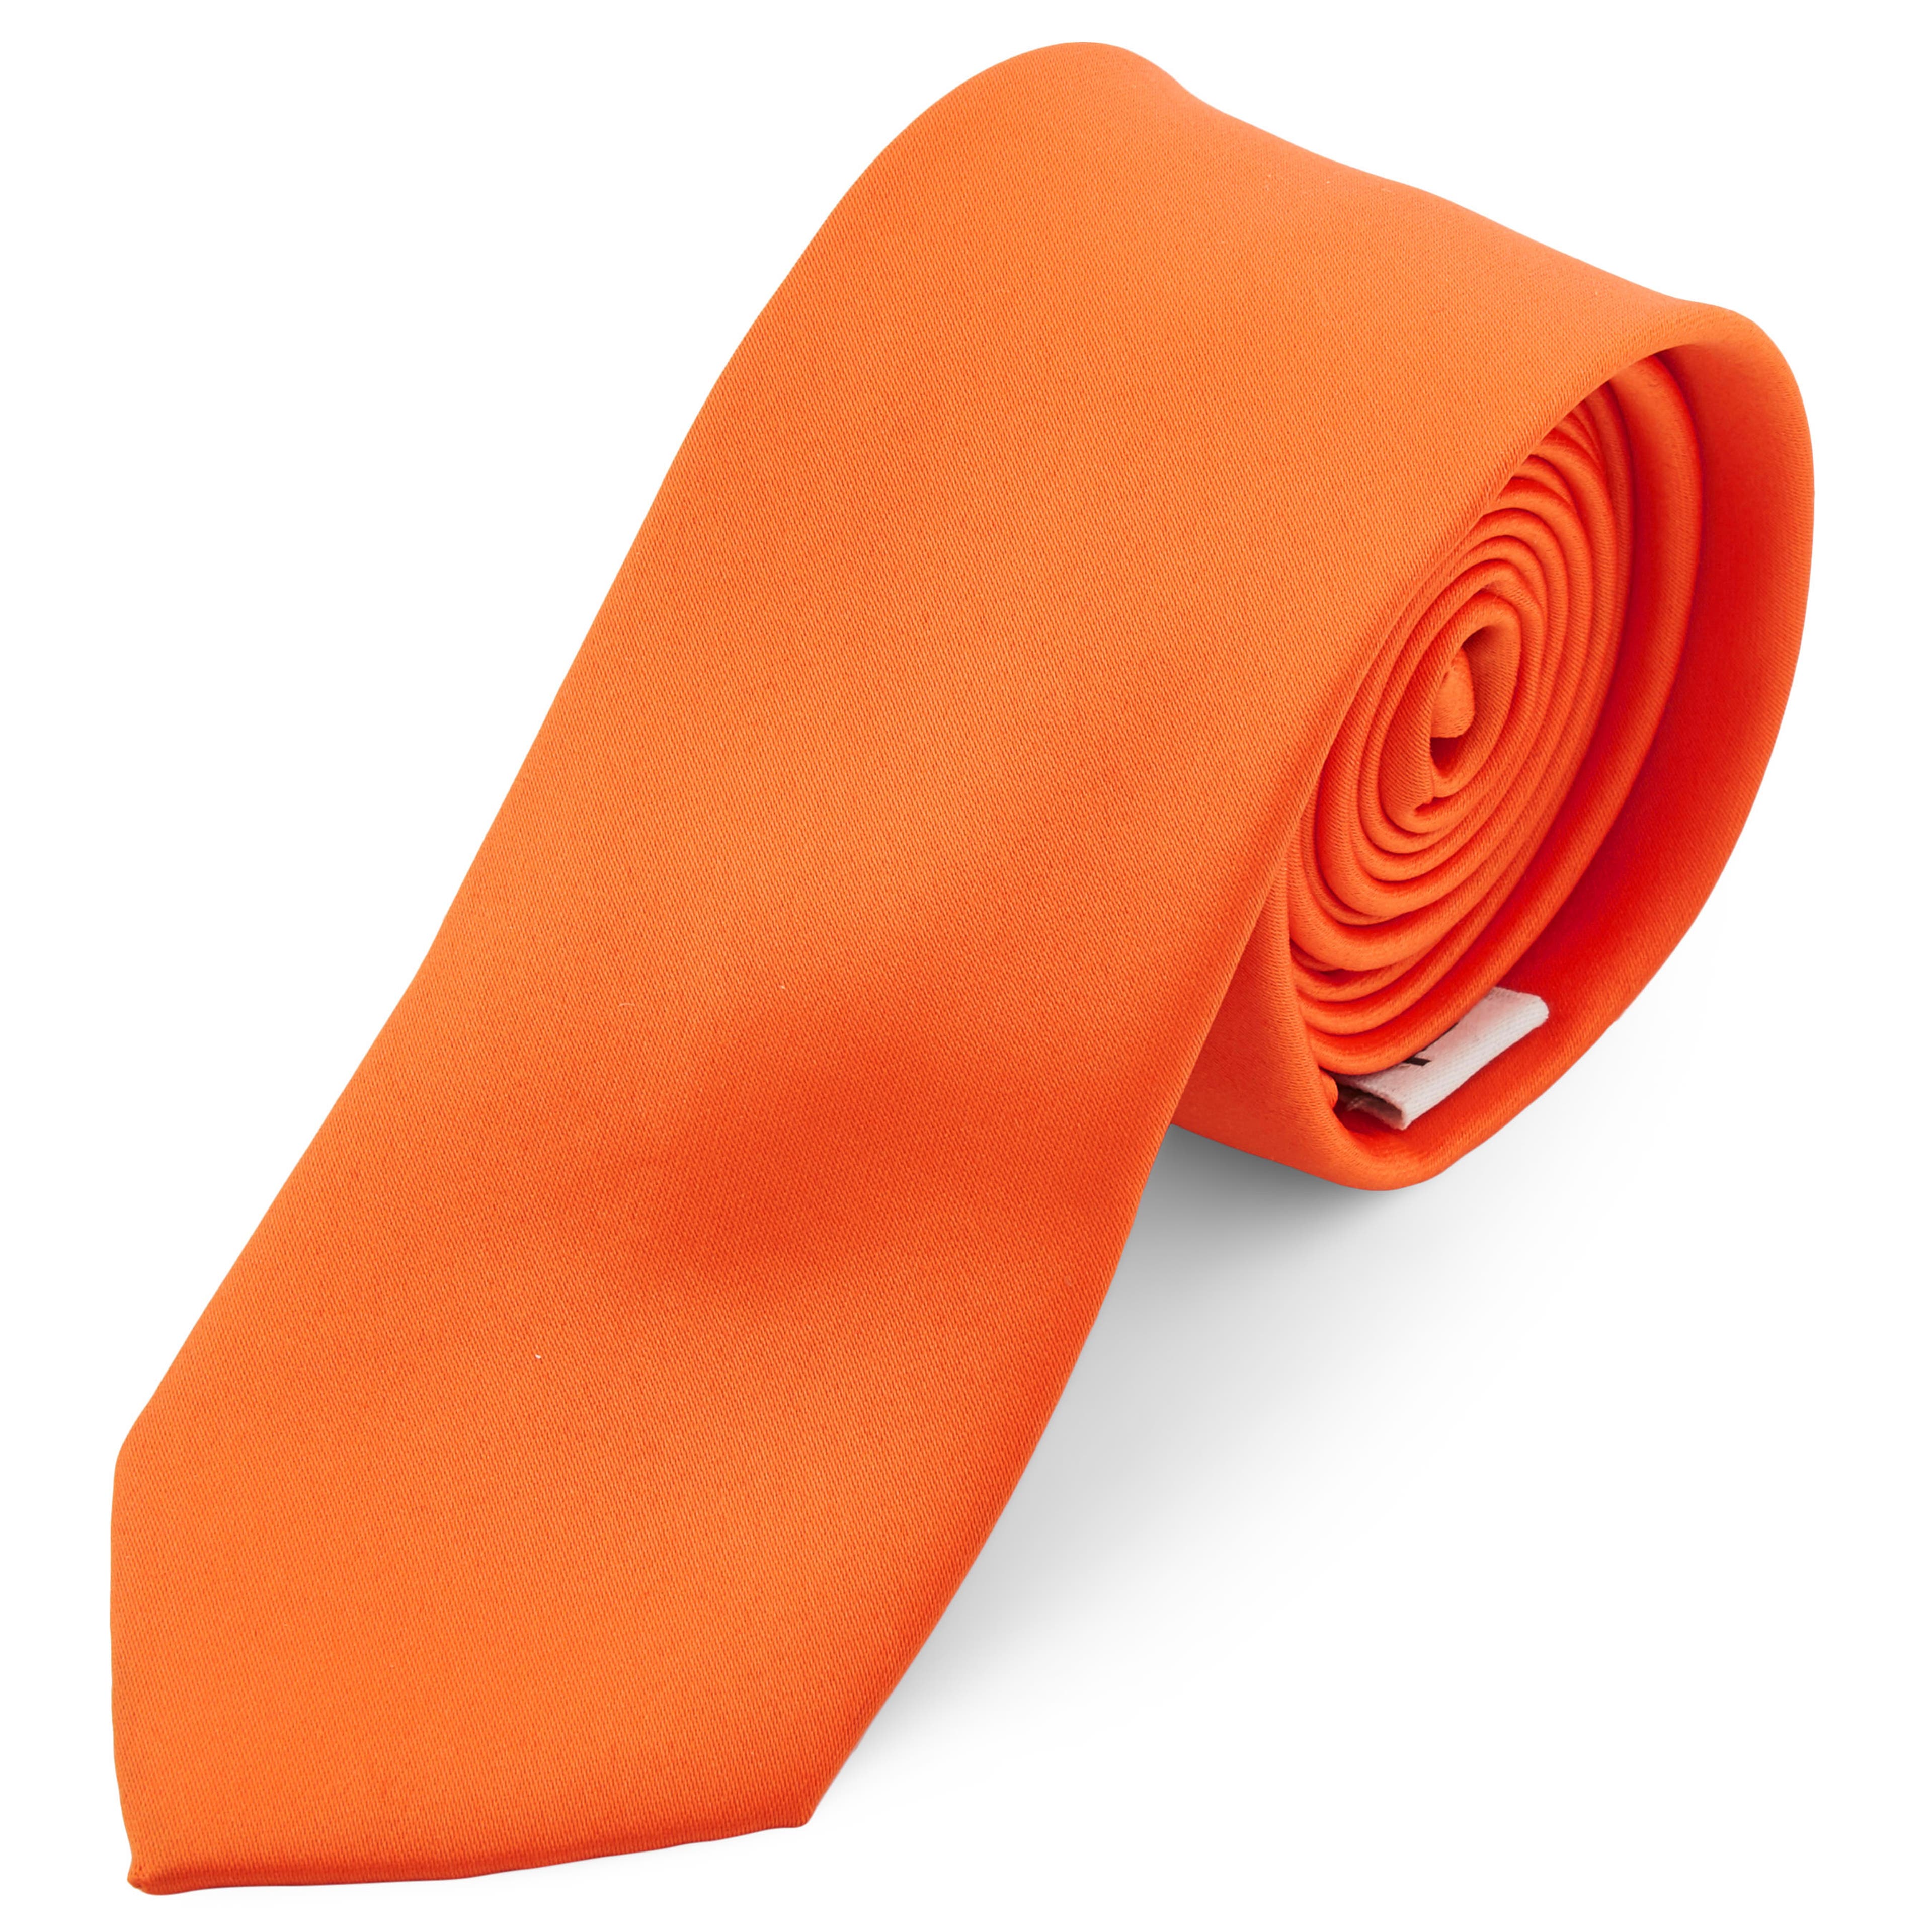 Rikító narancssárga egyszerű nyakkendő - 6 cm